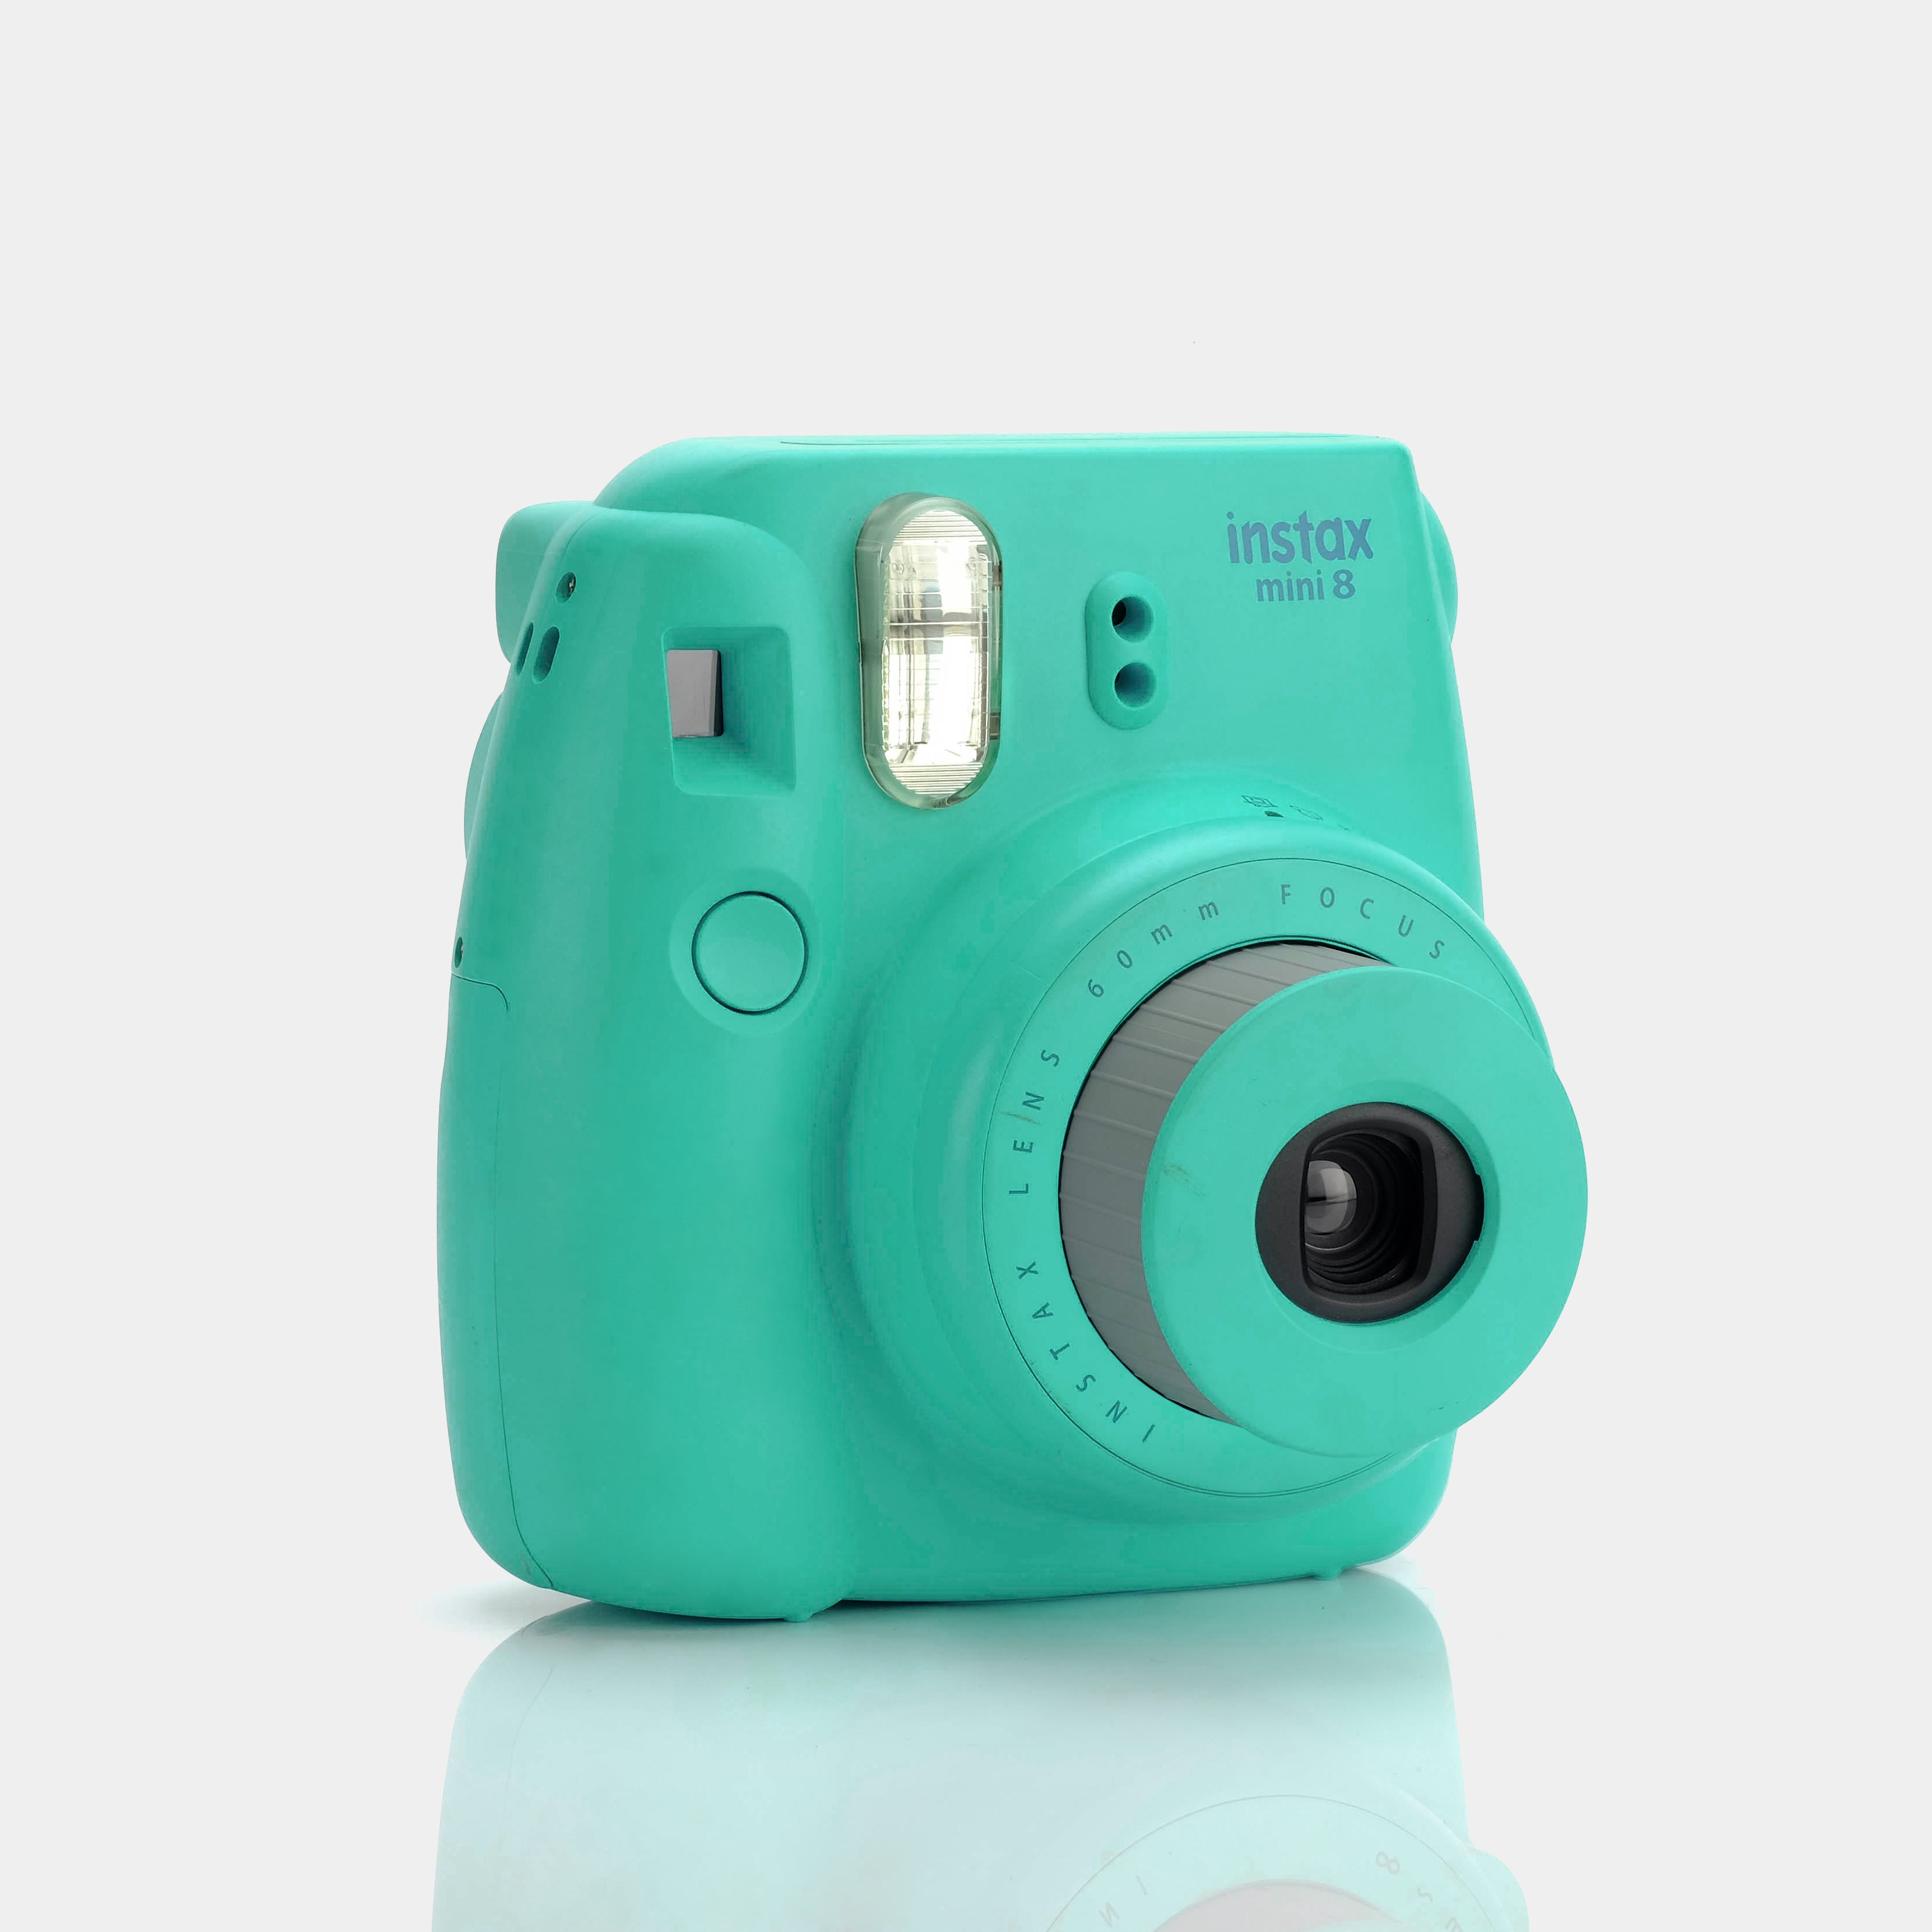 Fujifilm Instax Mini 8 Teal Instant Film Camera - Refurbished